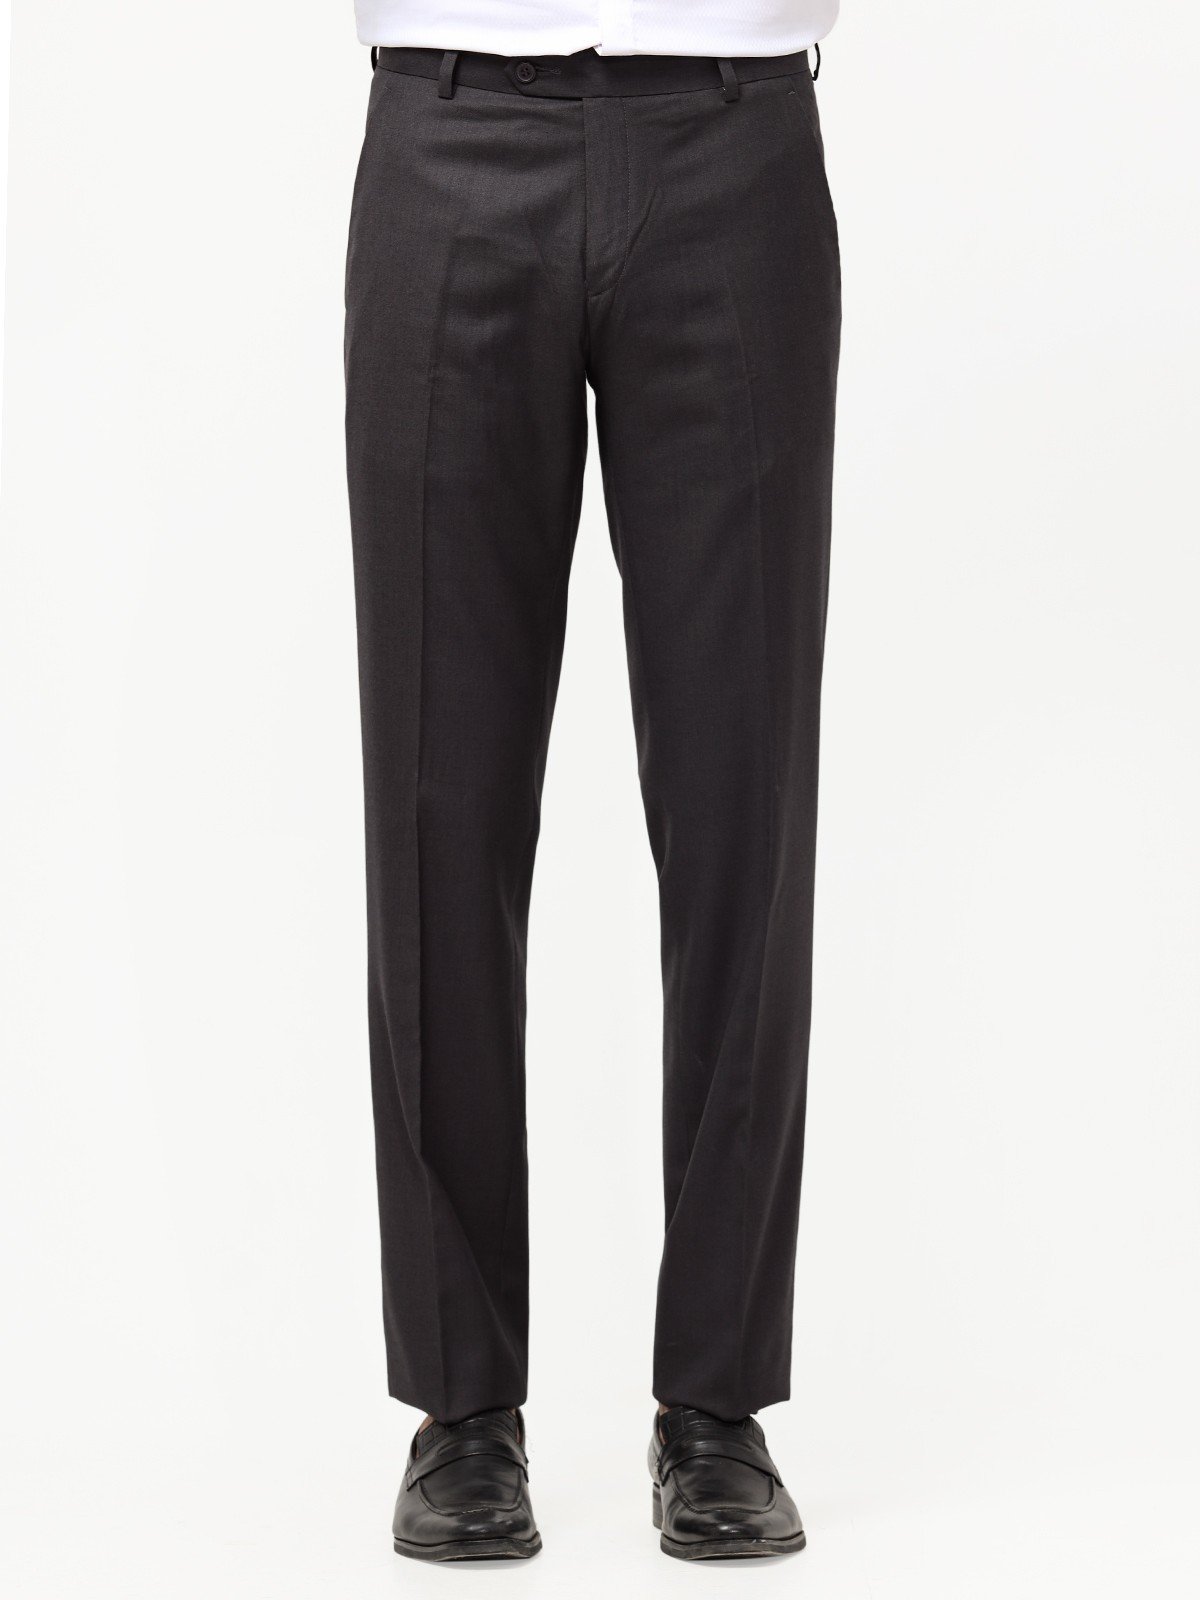 Men's Dark Grey Pant - EMBPF22-15231